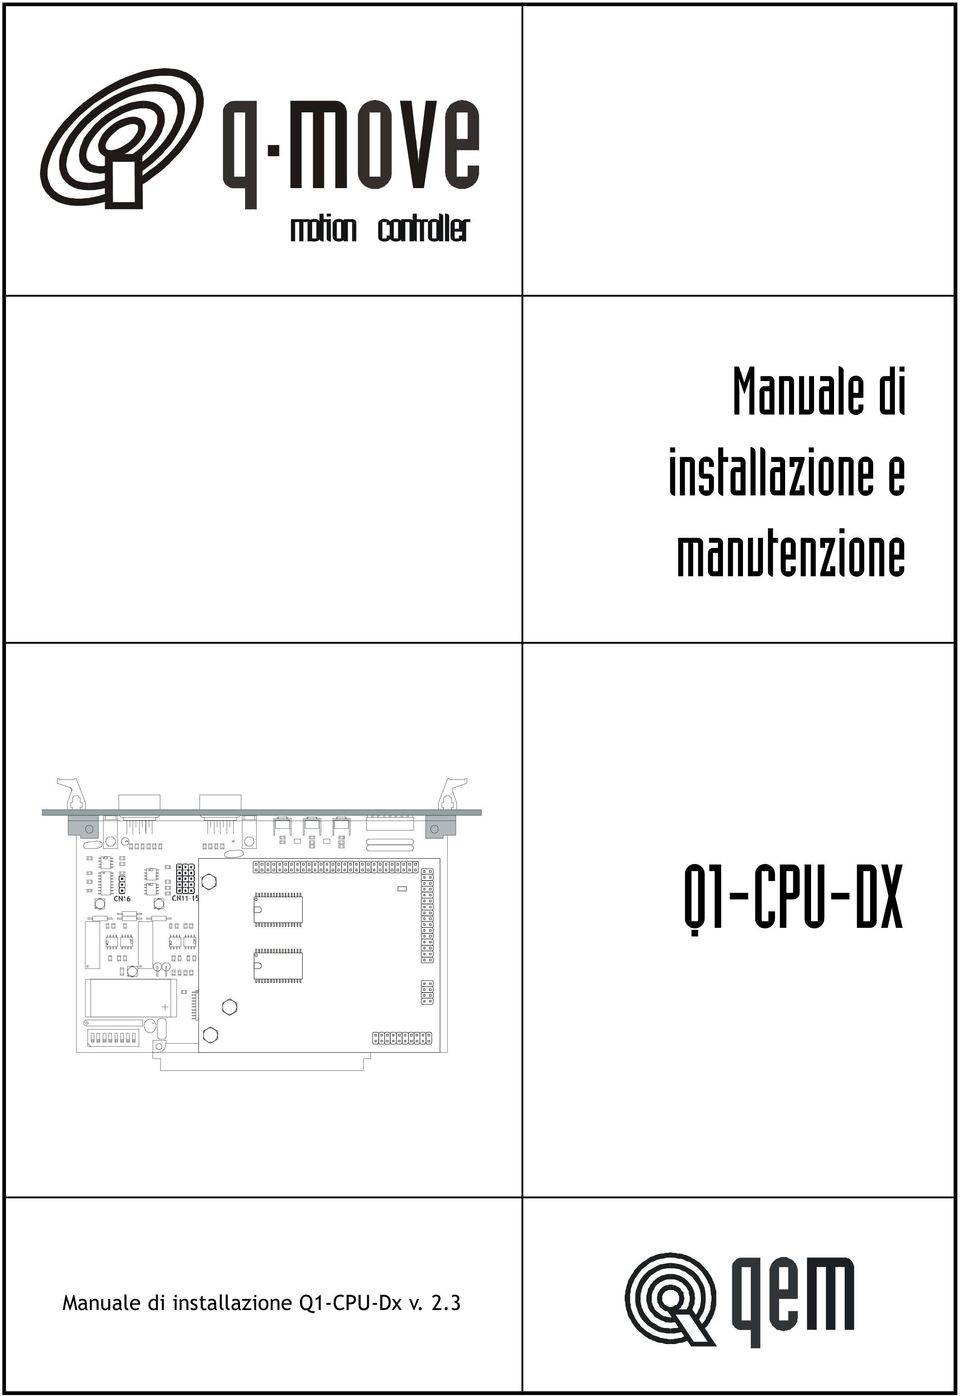 manutenzione Q1-CPU-DX